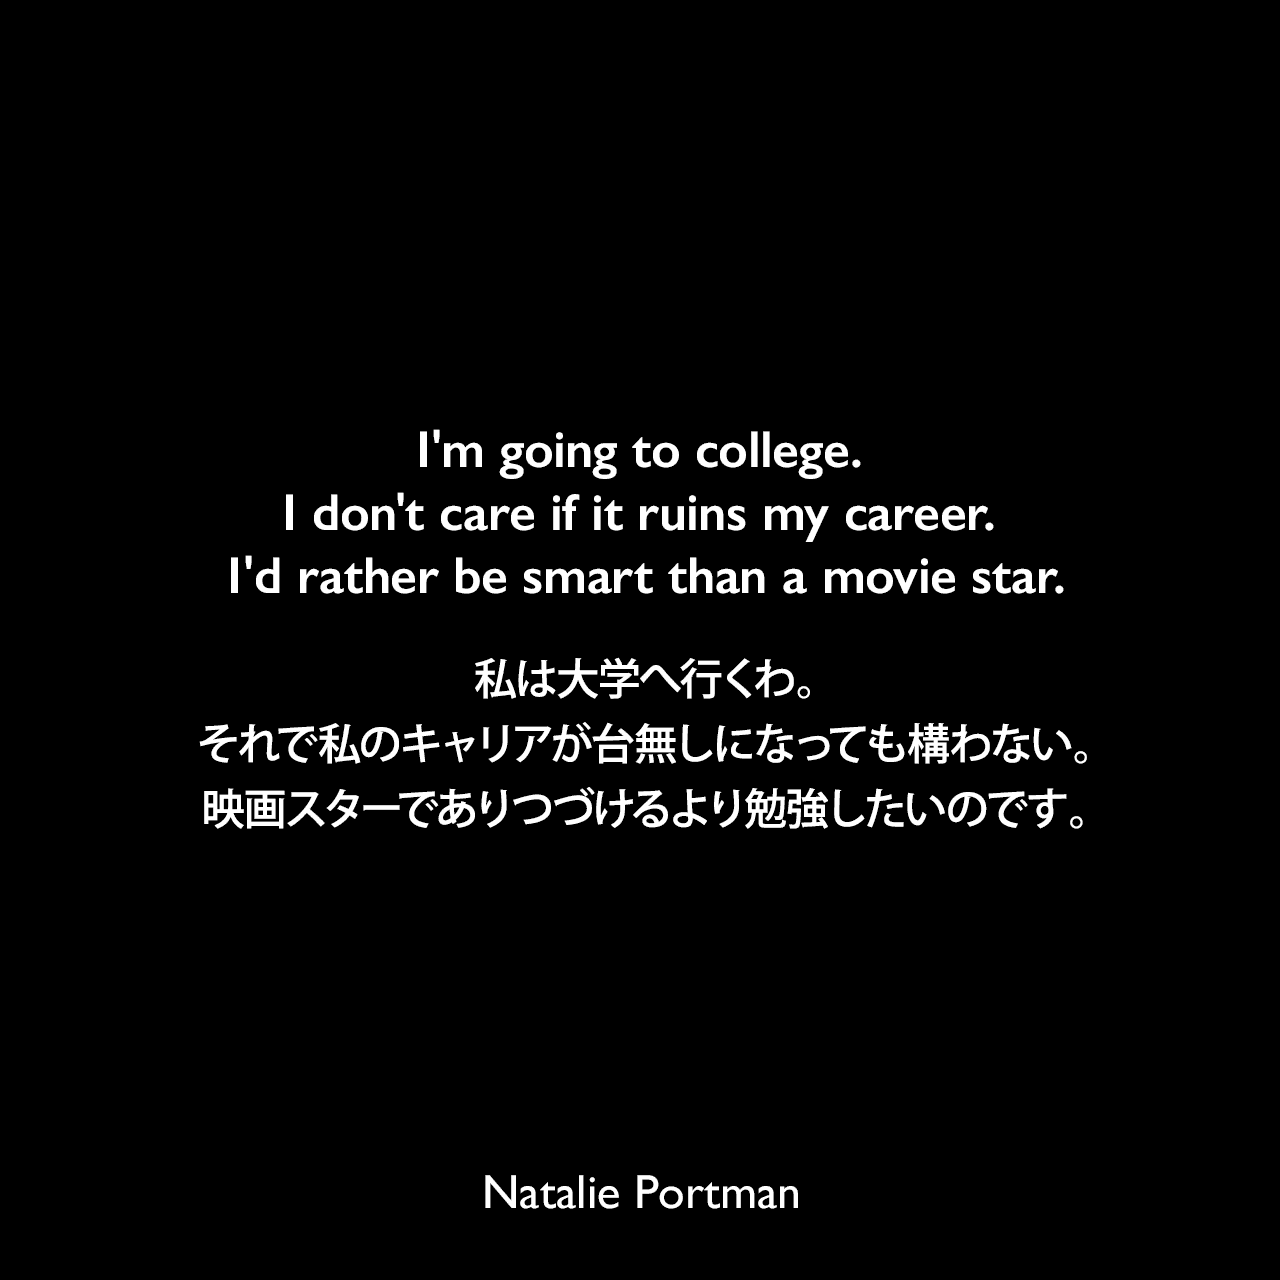 I'm going to college. I don't care if it ruins my career. I'd rather be smart than a movie star.私は大学へ行くわ。それで私のキャリアが台無しになっても構わない。映画スターでありつづけるより勉強したいのです。Natalie Portman